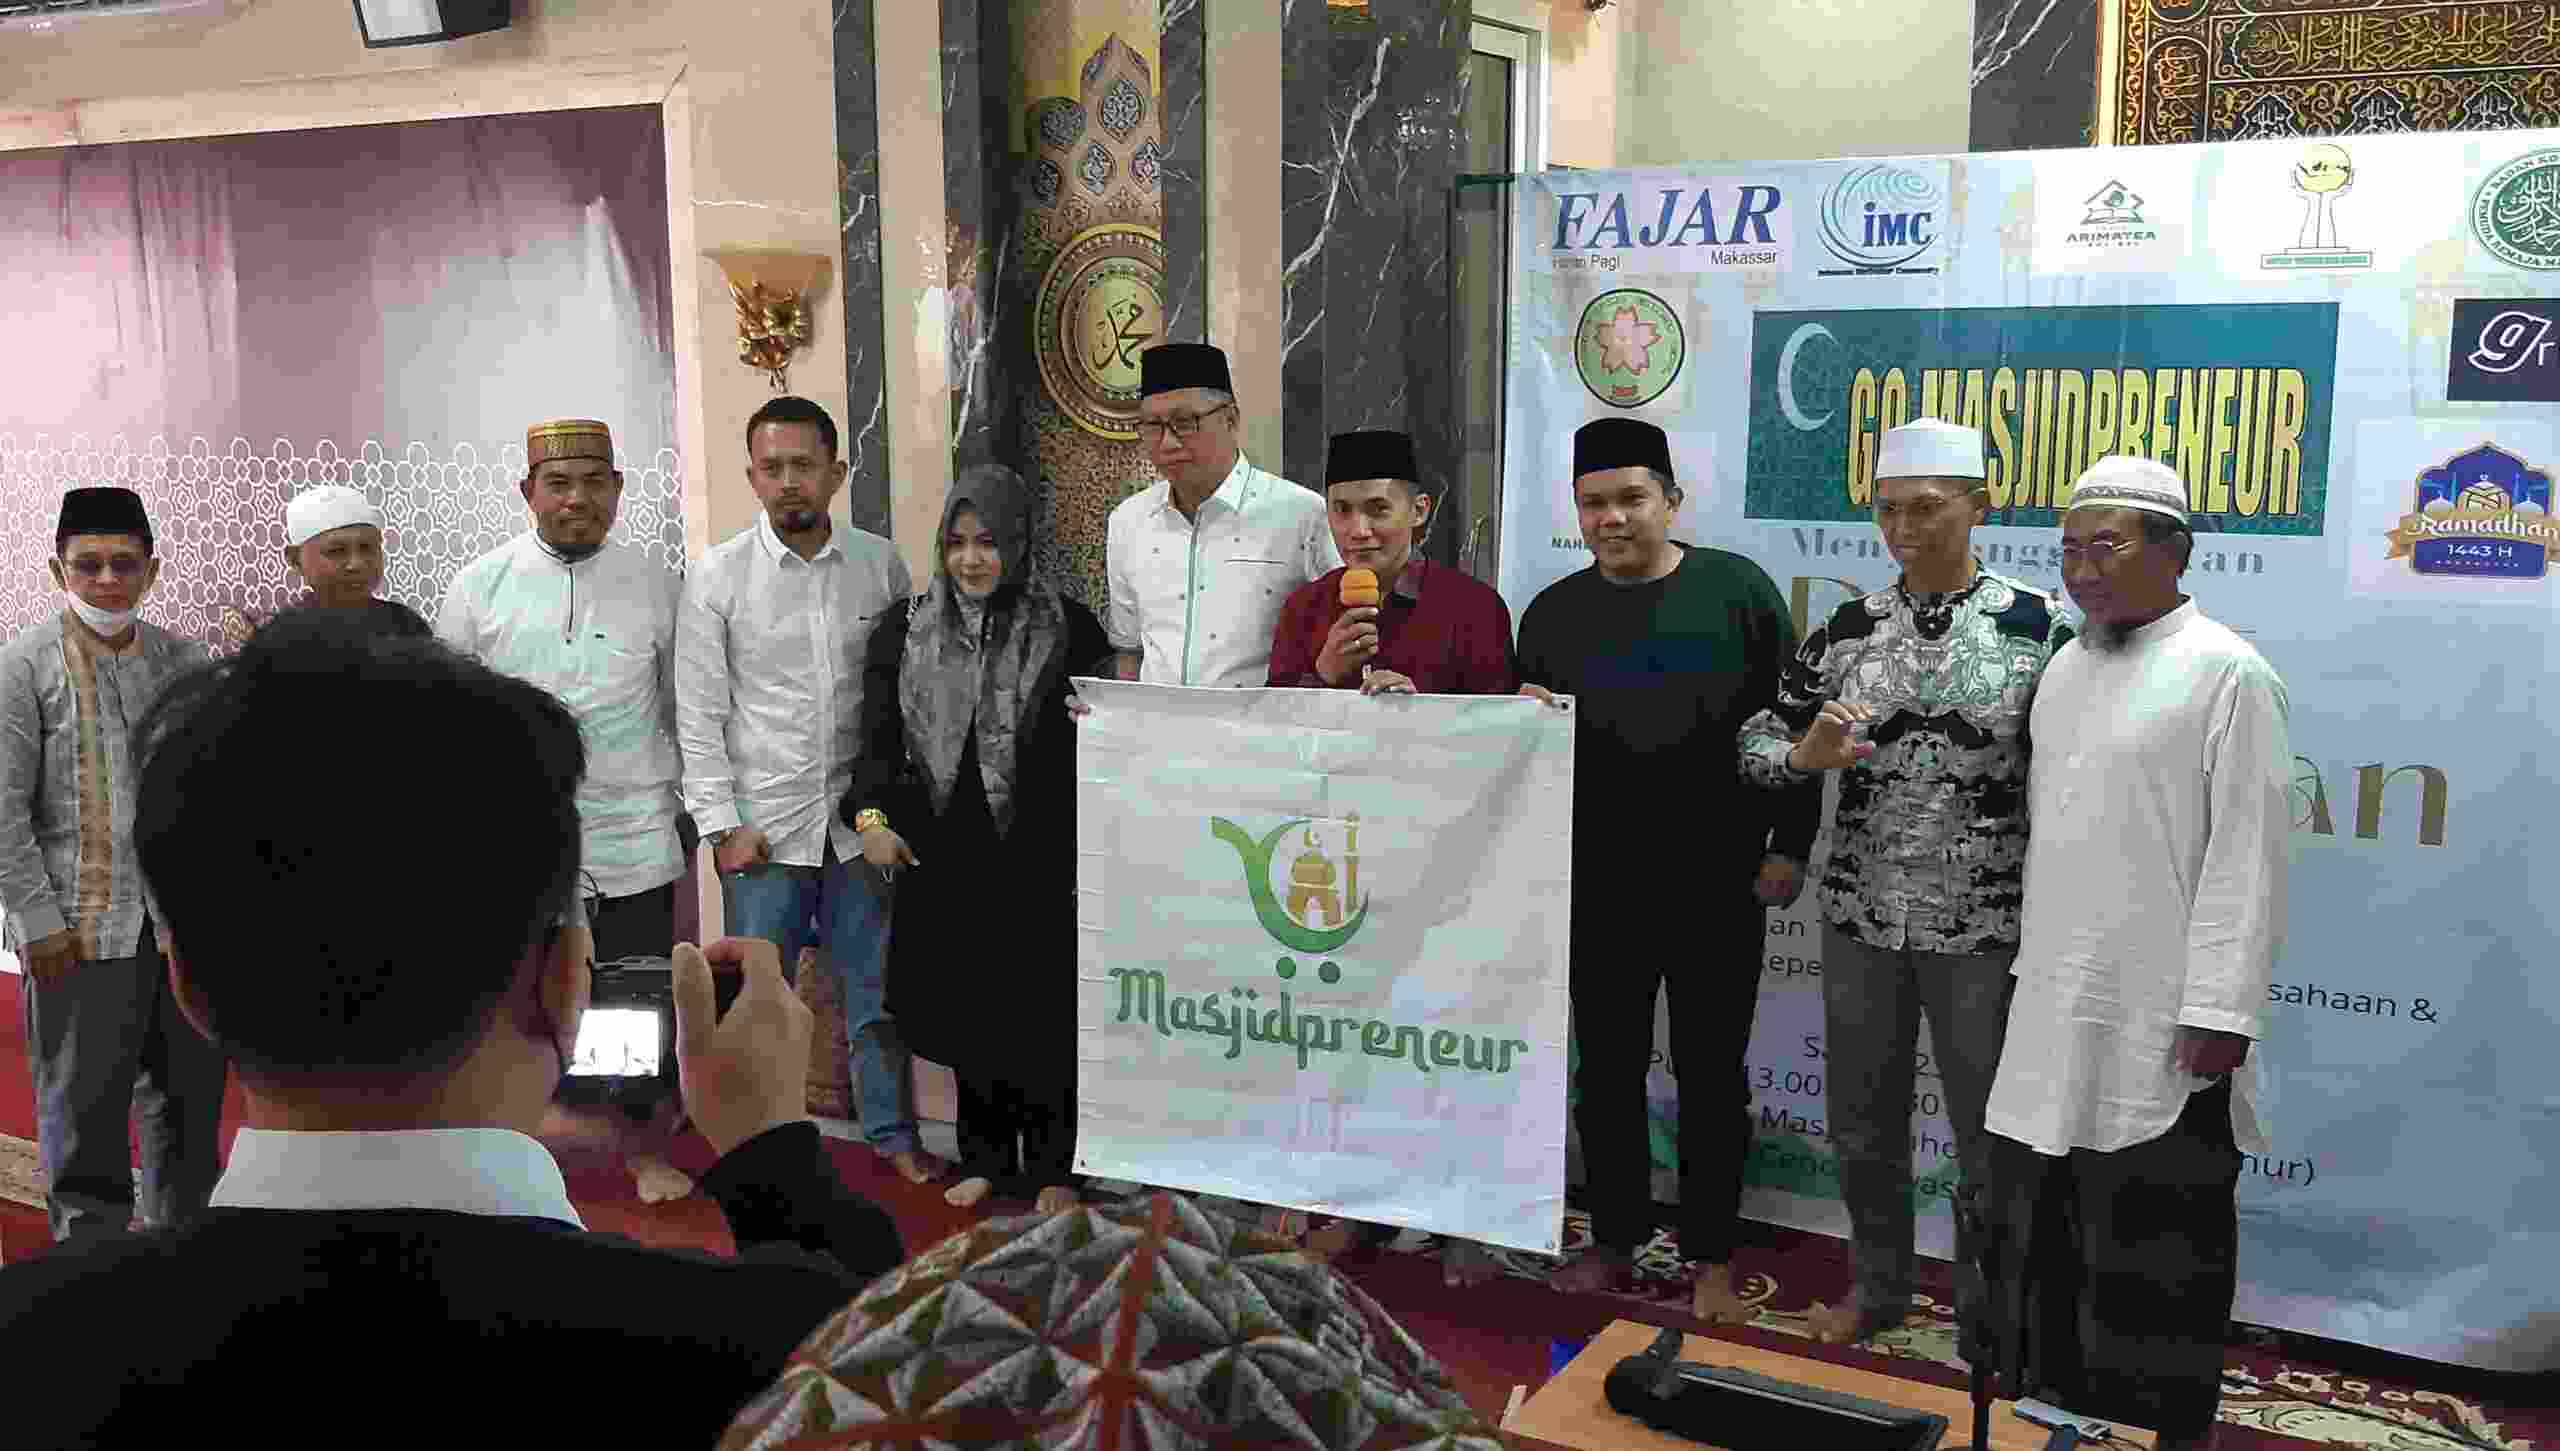 Askar Al Makassari Soft Launching Aplikasi Masjidpreneur untuk Ummat